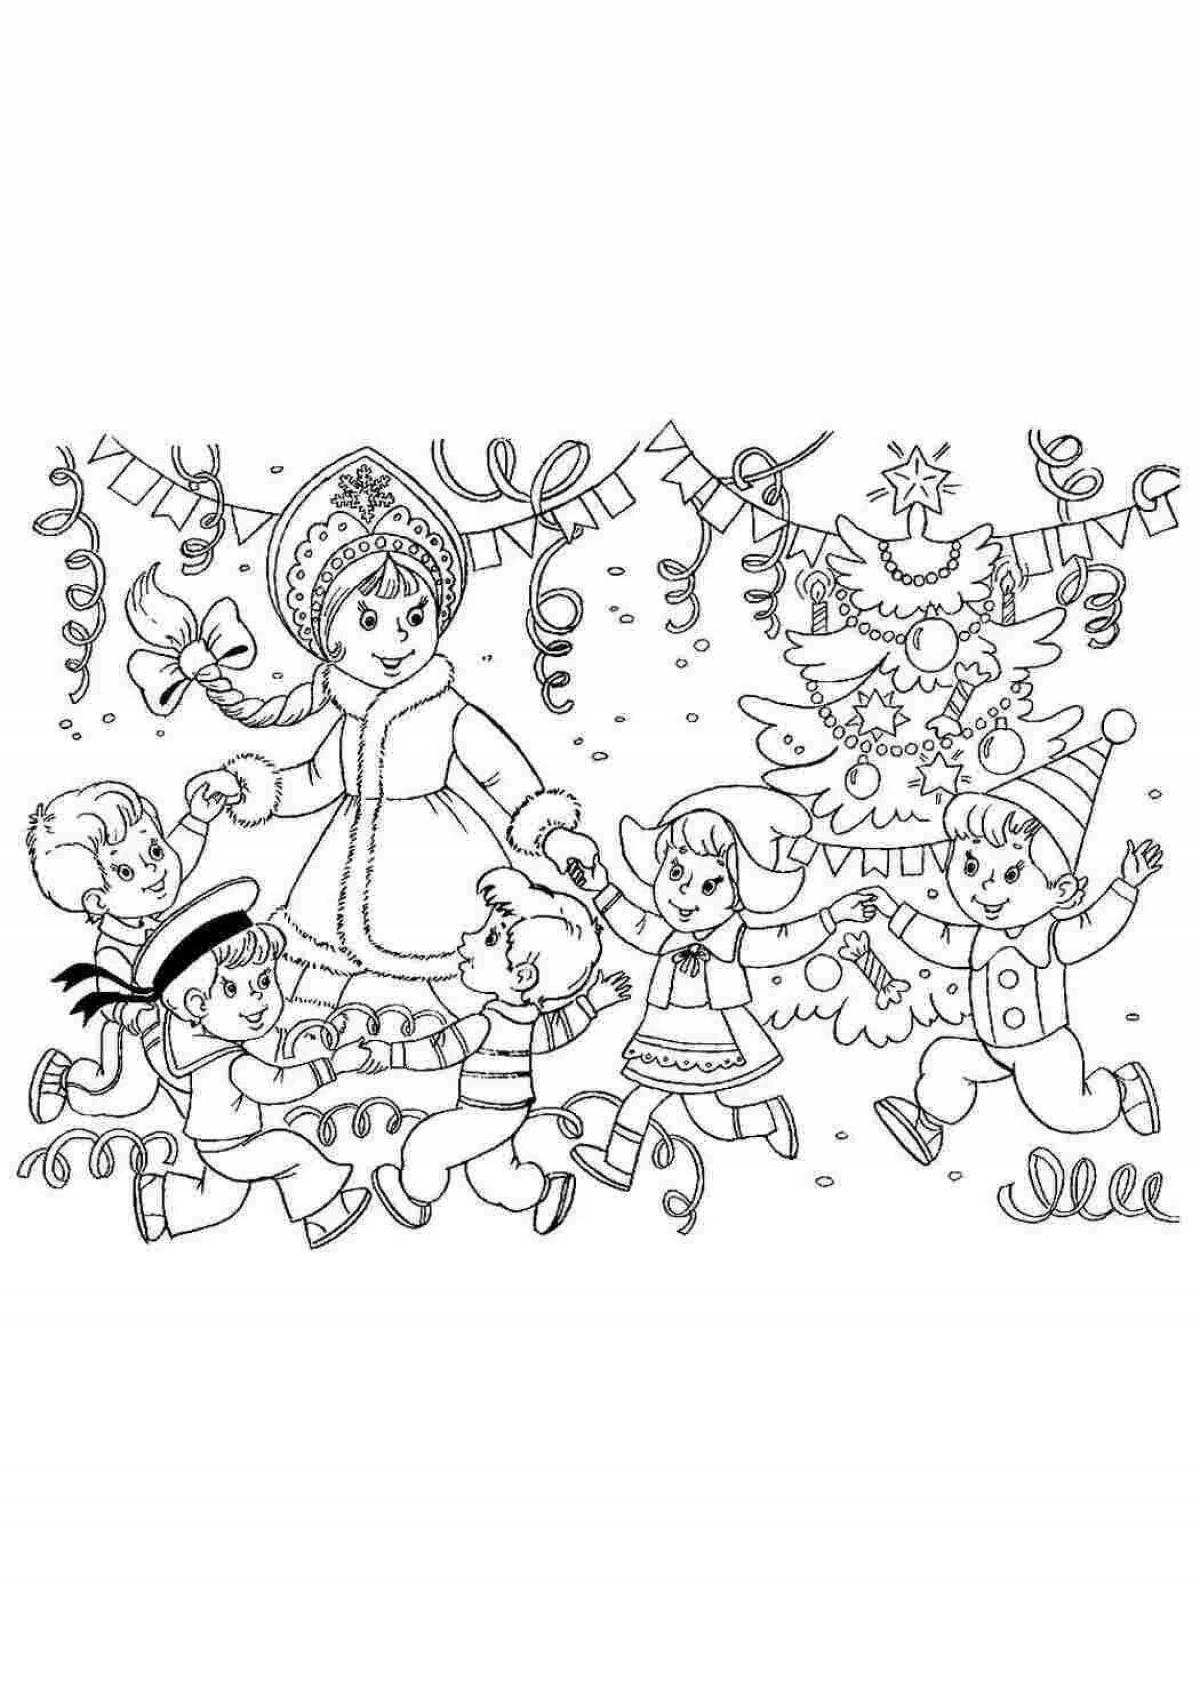 Coloring page joyful round dance around the Christmas tree